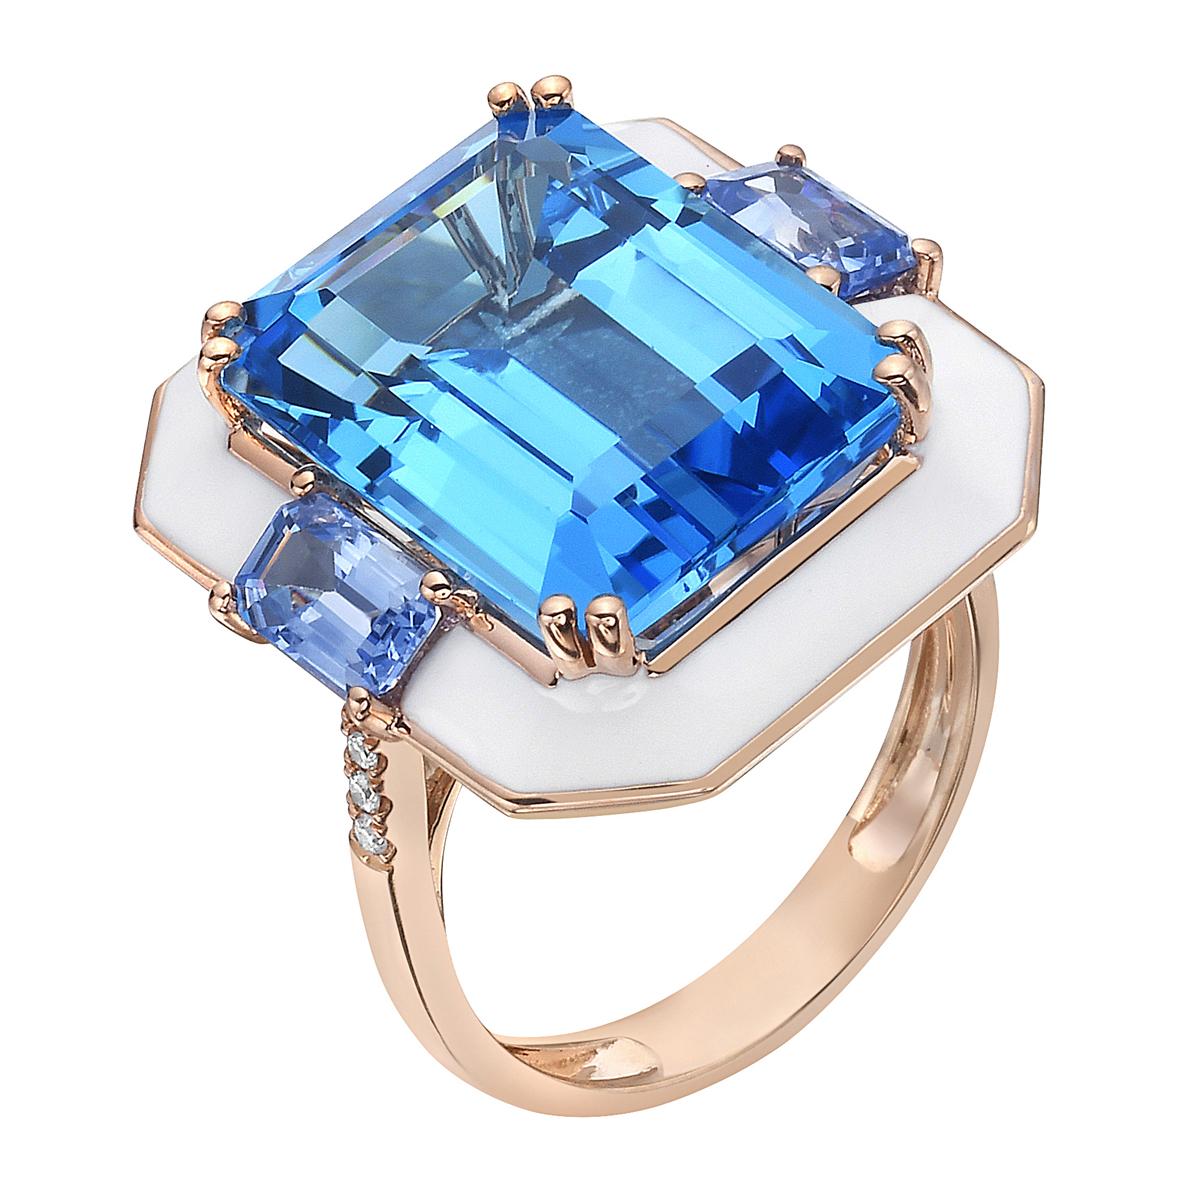 Mit diesem exquisiten Halbedelsteinring aus Schweizer Blautopas in Roségold mit Diamanten stehen Stil und Glamour im Mittelpunkt. Dieser 18-karätige Ring mit Smaragdschliff besteht aus 5,29 Gramm Gold, 3 Schweizer Blautopasen von insgesamt 13,65